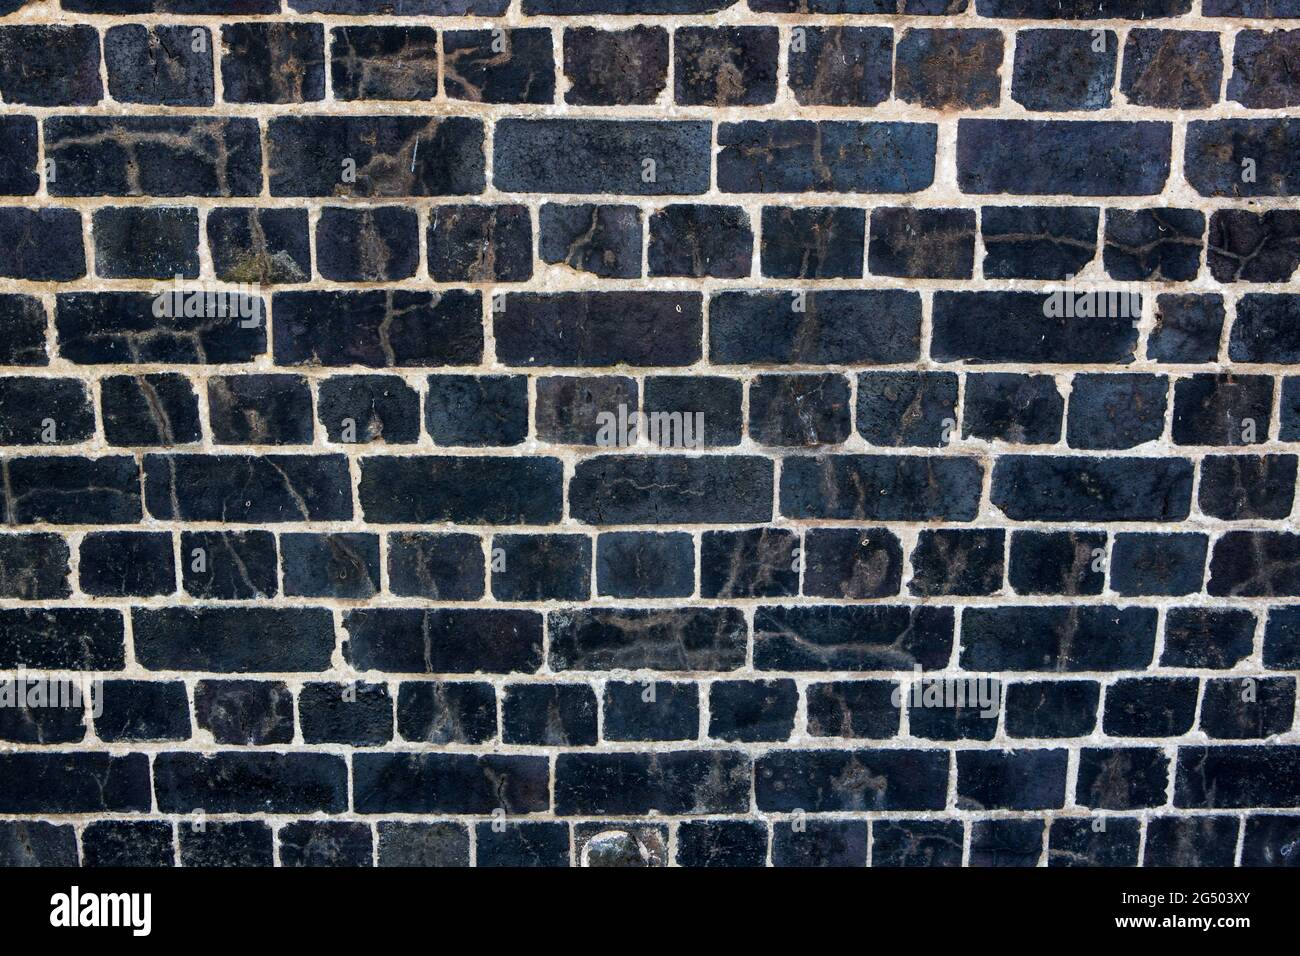 Brick Black Wall Texture Background. Dark Brickwork Pattern. Block